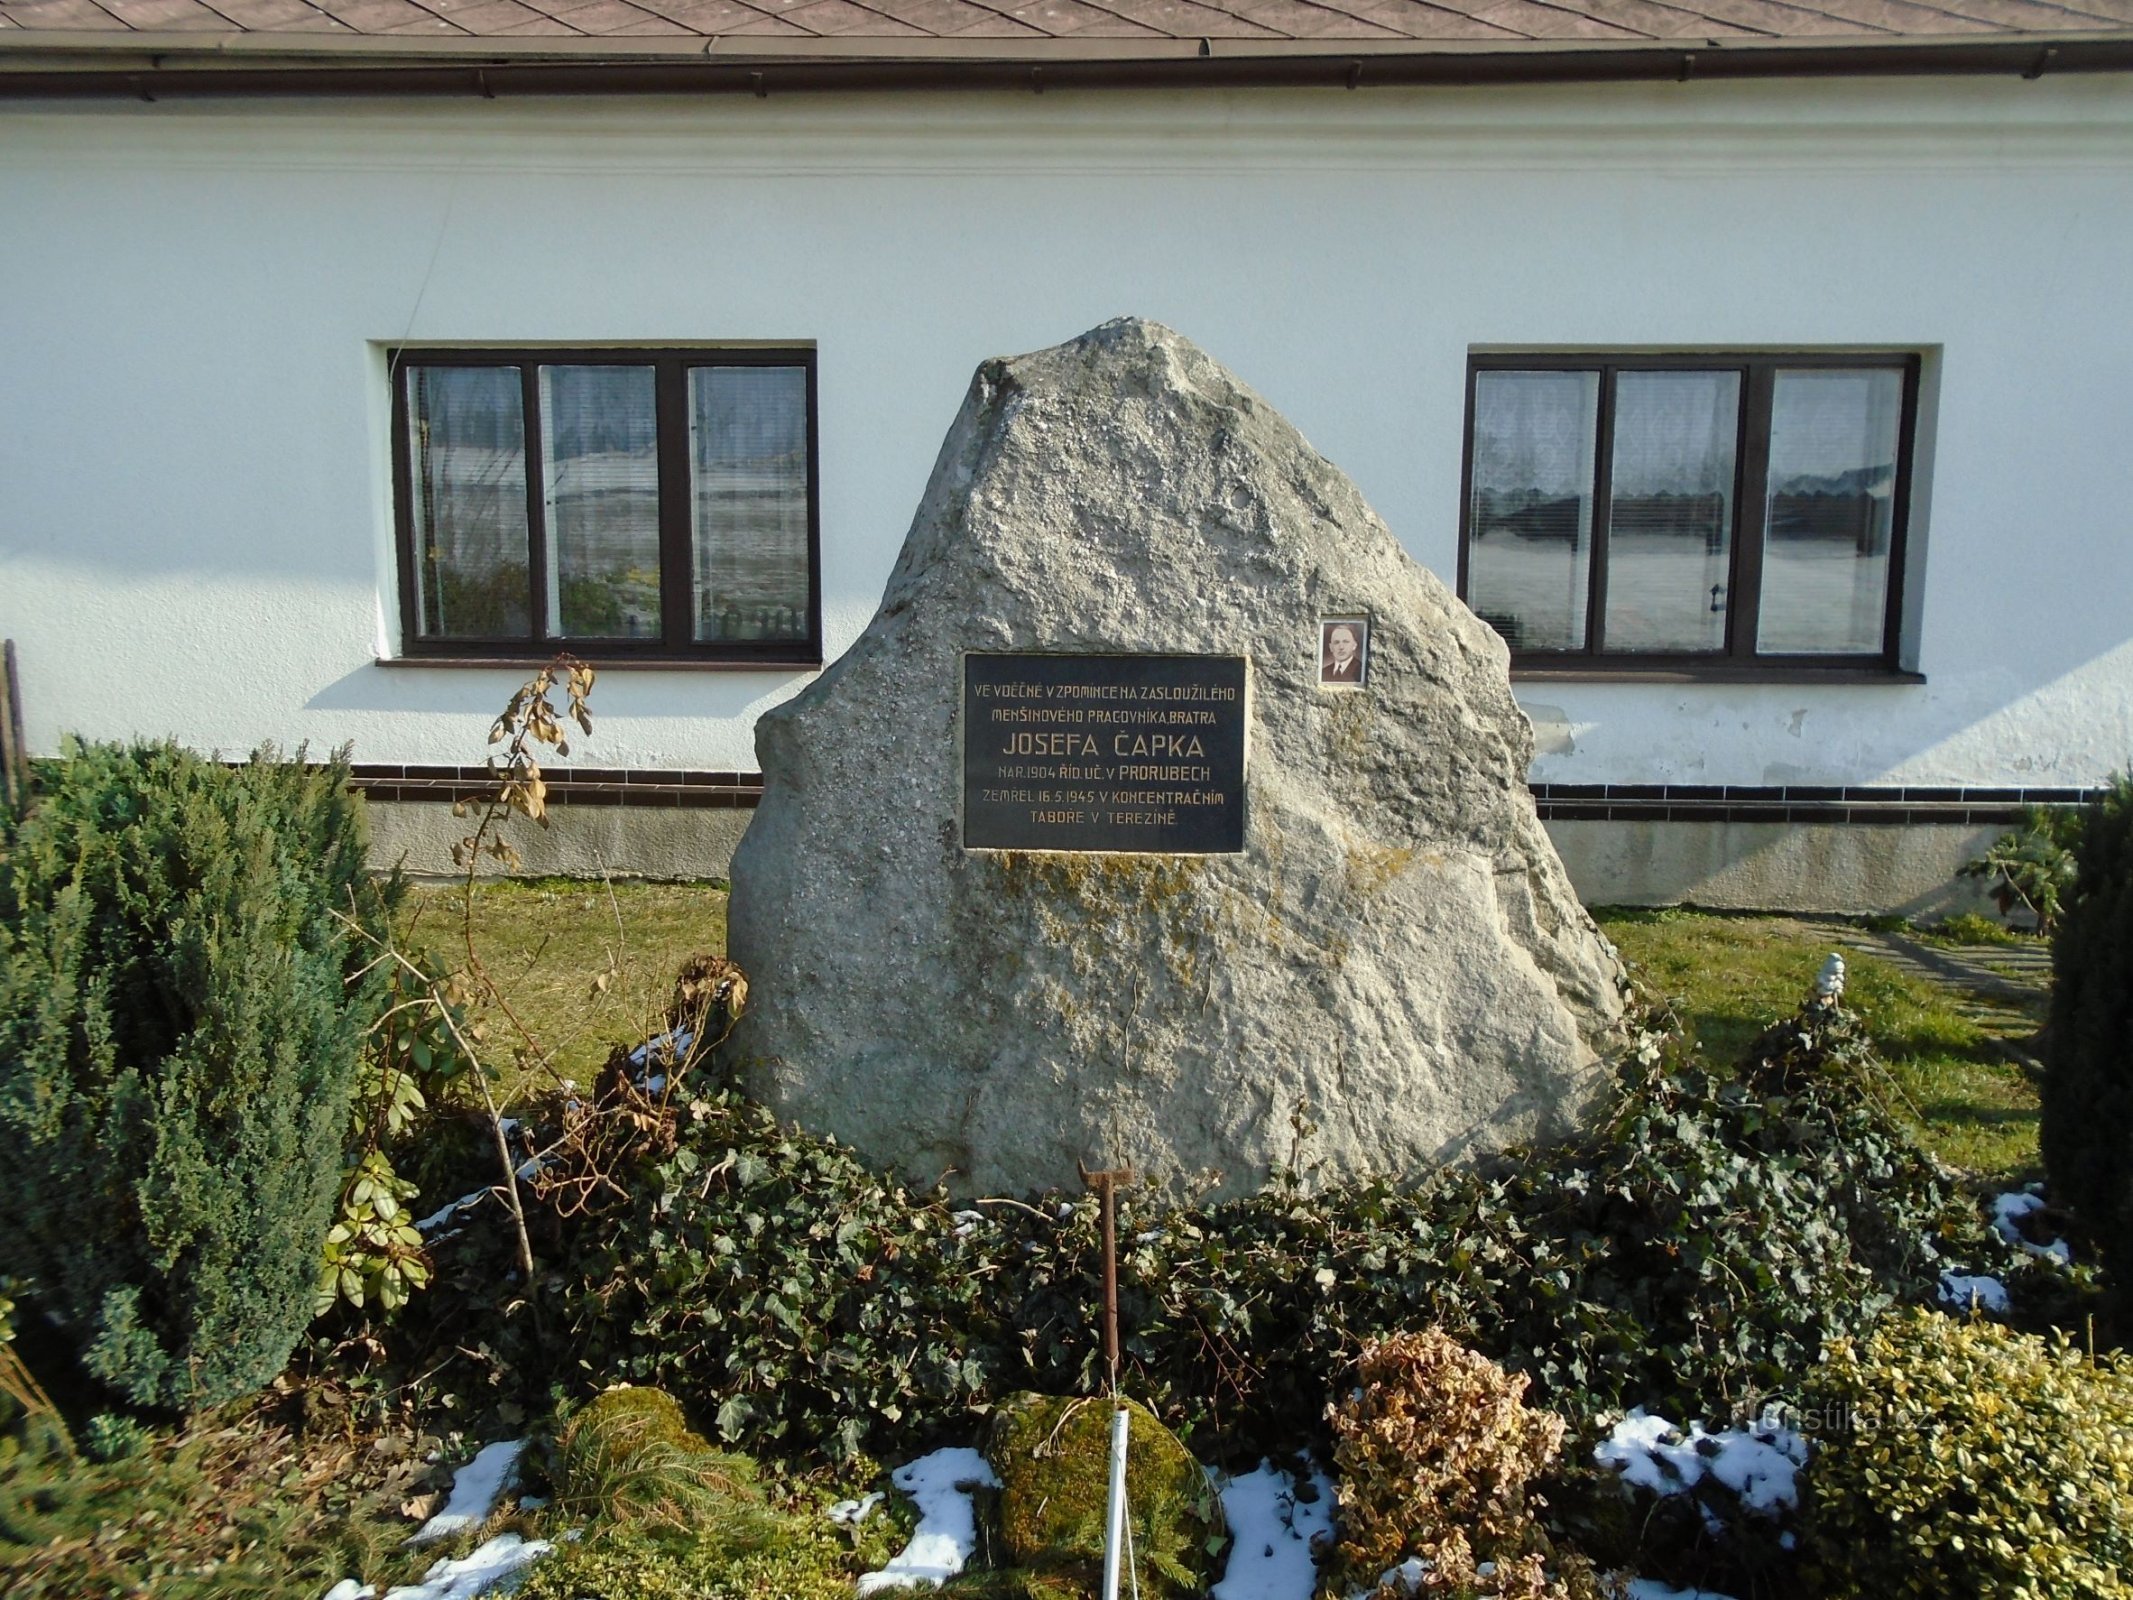 Pomník J. Čapka (Proruby, 21.2.2018)